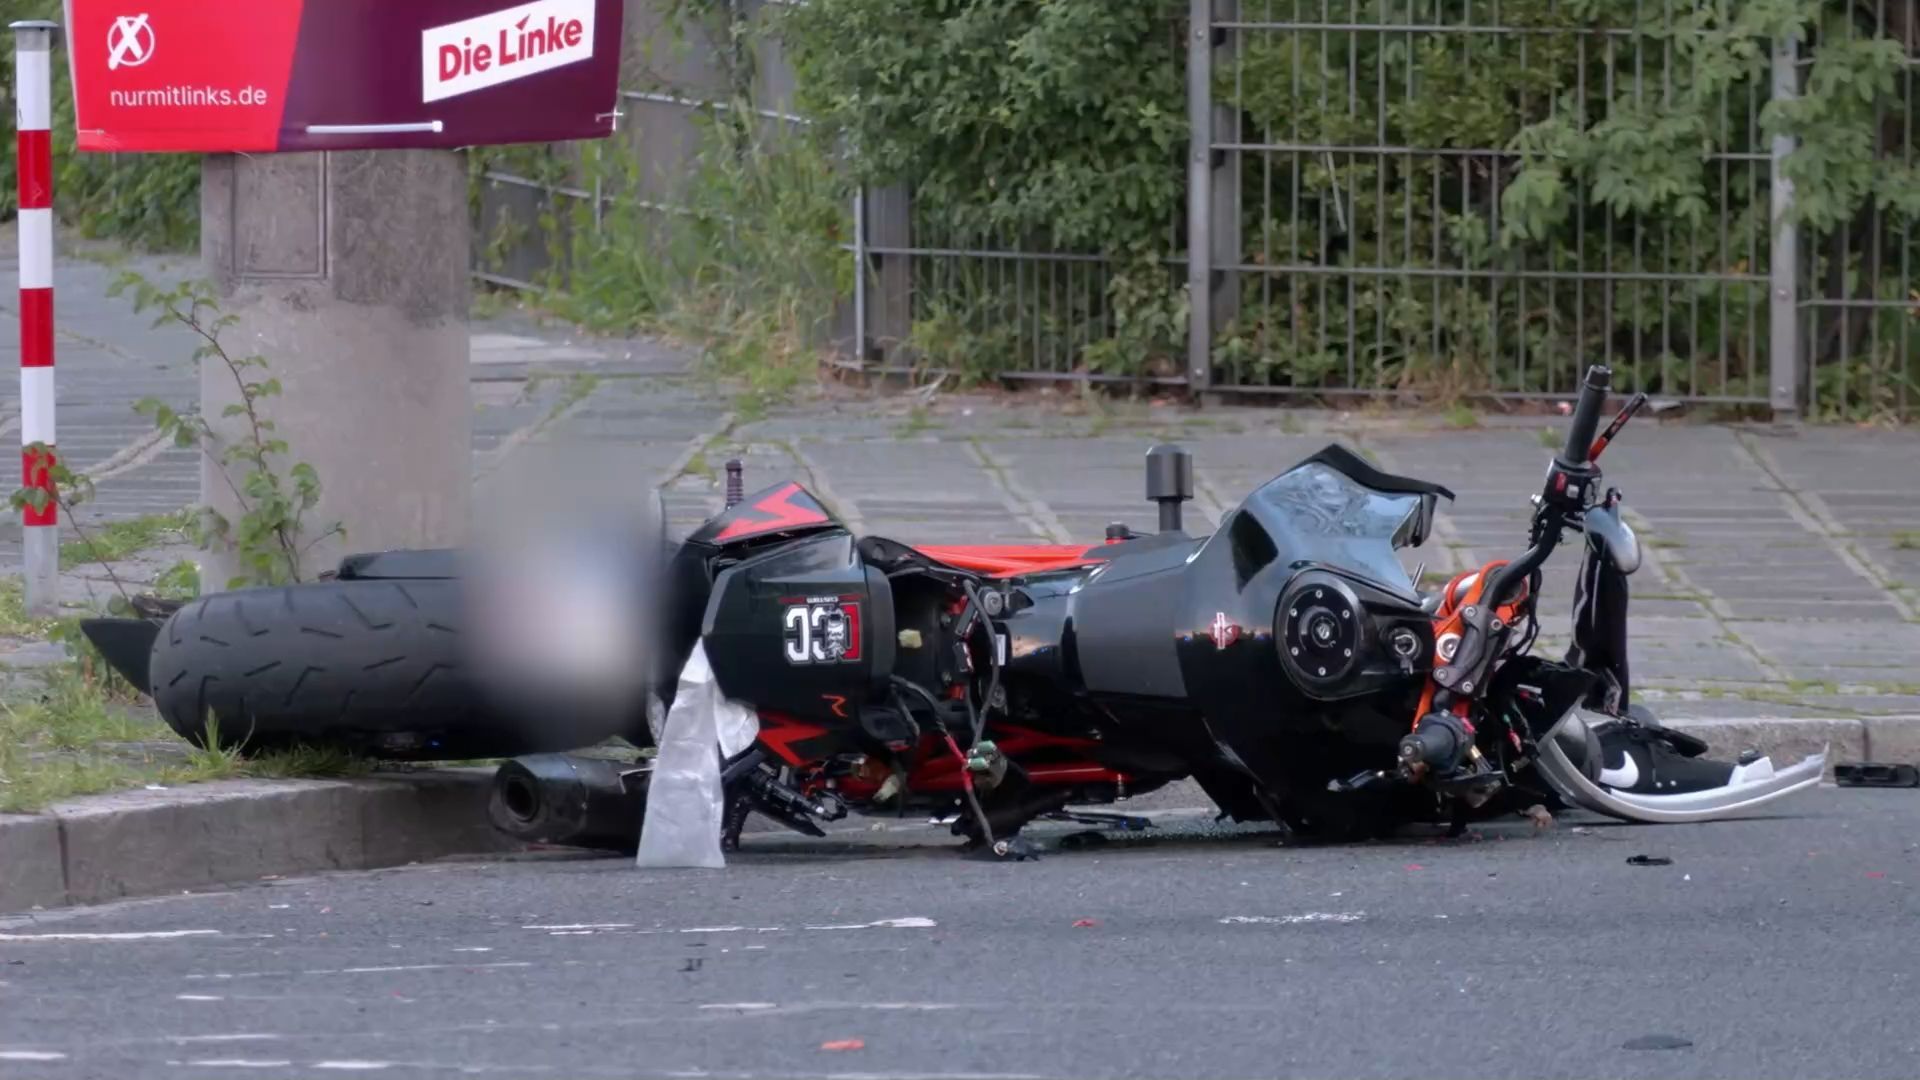 Motorradfahrer kollidiert mit Bus: Biker verstirbt an Unfallstelle